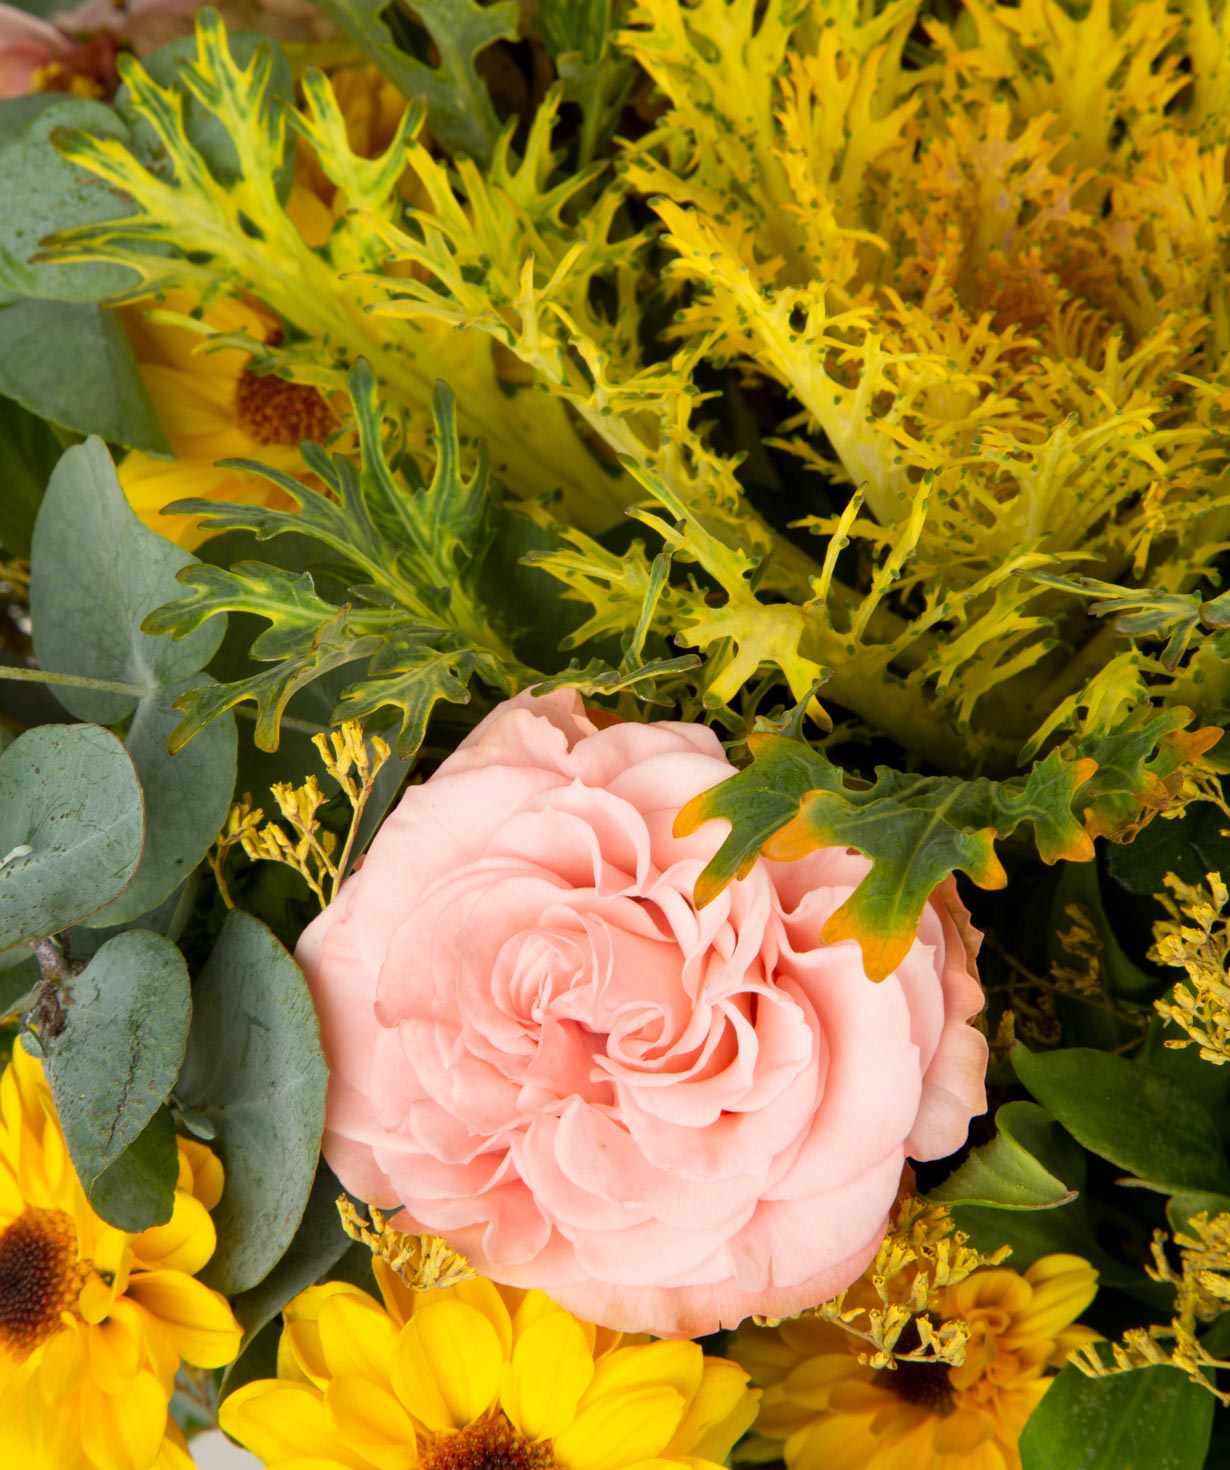 Ծաղկեփունջ «Կիգալի» վարդերով, հորտենզիայով և քրիզանթեմներով